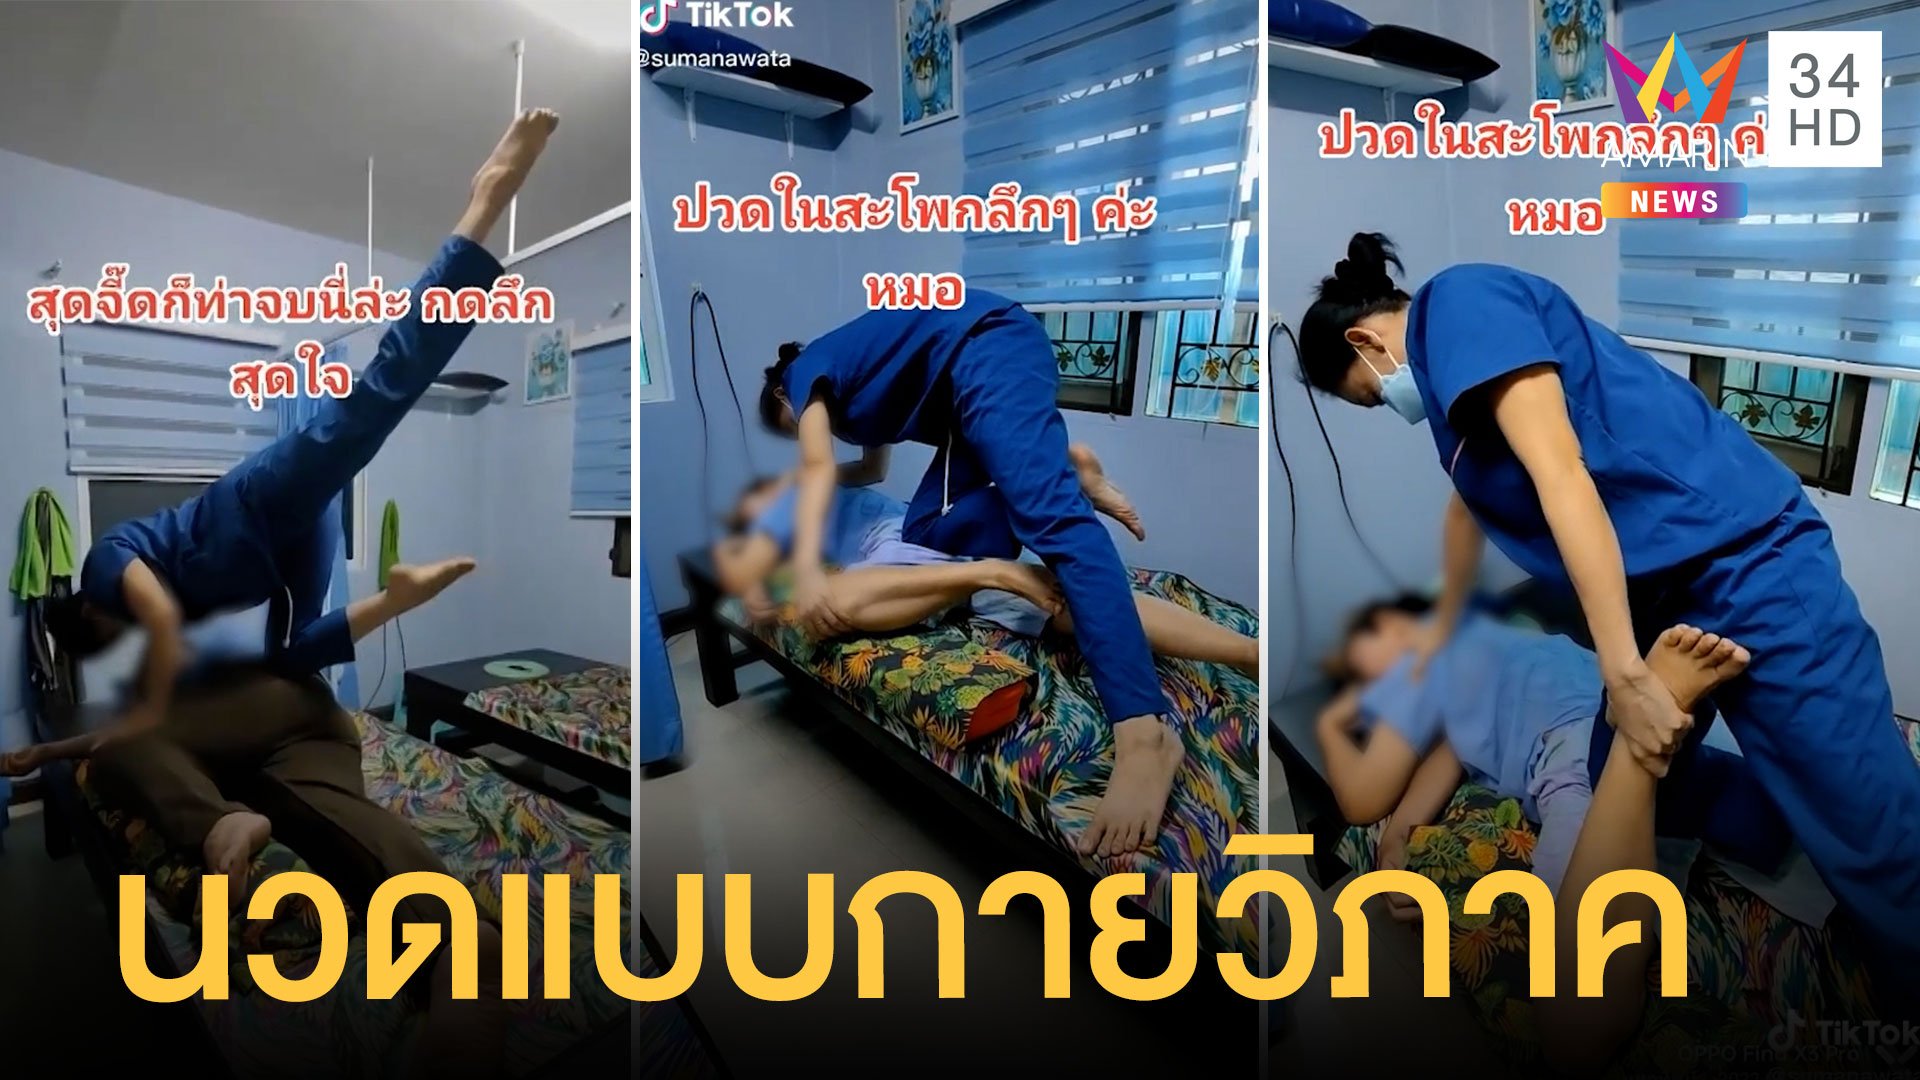 ตื่นตา นักนวดแผนไทย สไตล์โยคะ คนขี้เมื่อยต่อคิวยาวเหยียด | ข่าวอรุณอมรินทร์ | 29 มี.ค. 65 | AMARIN TVHD34